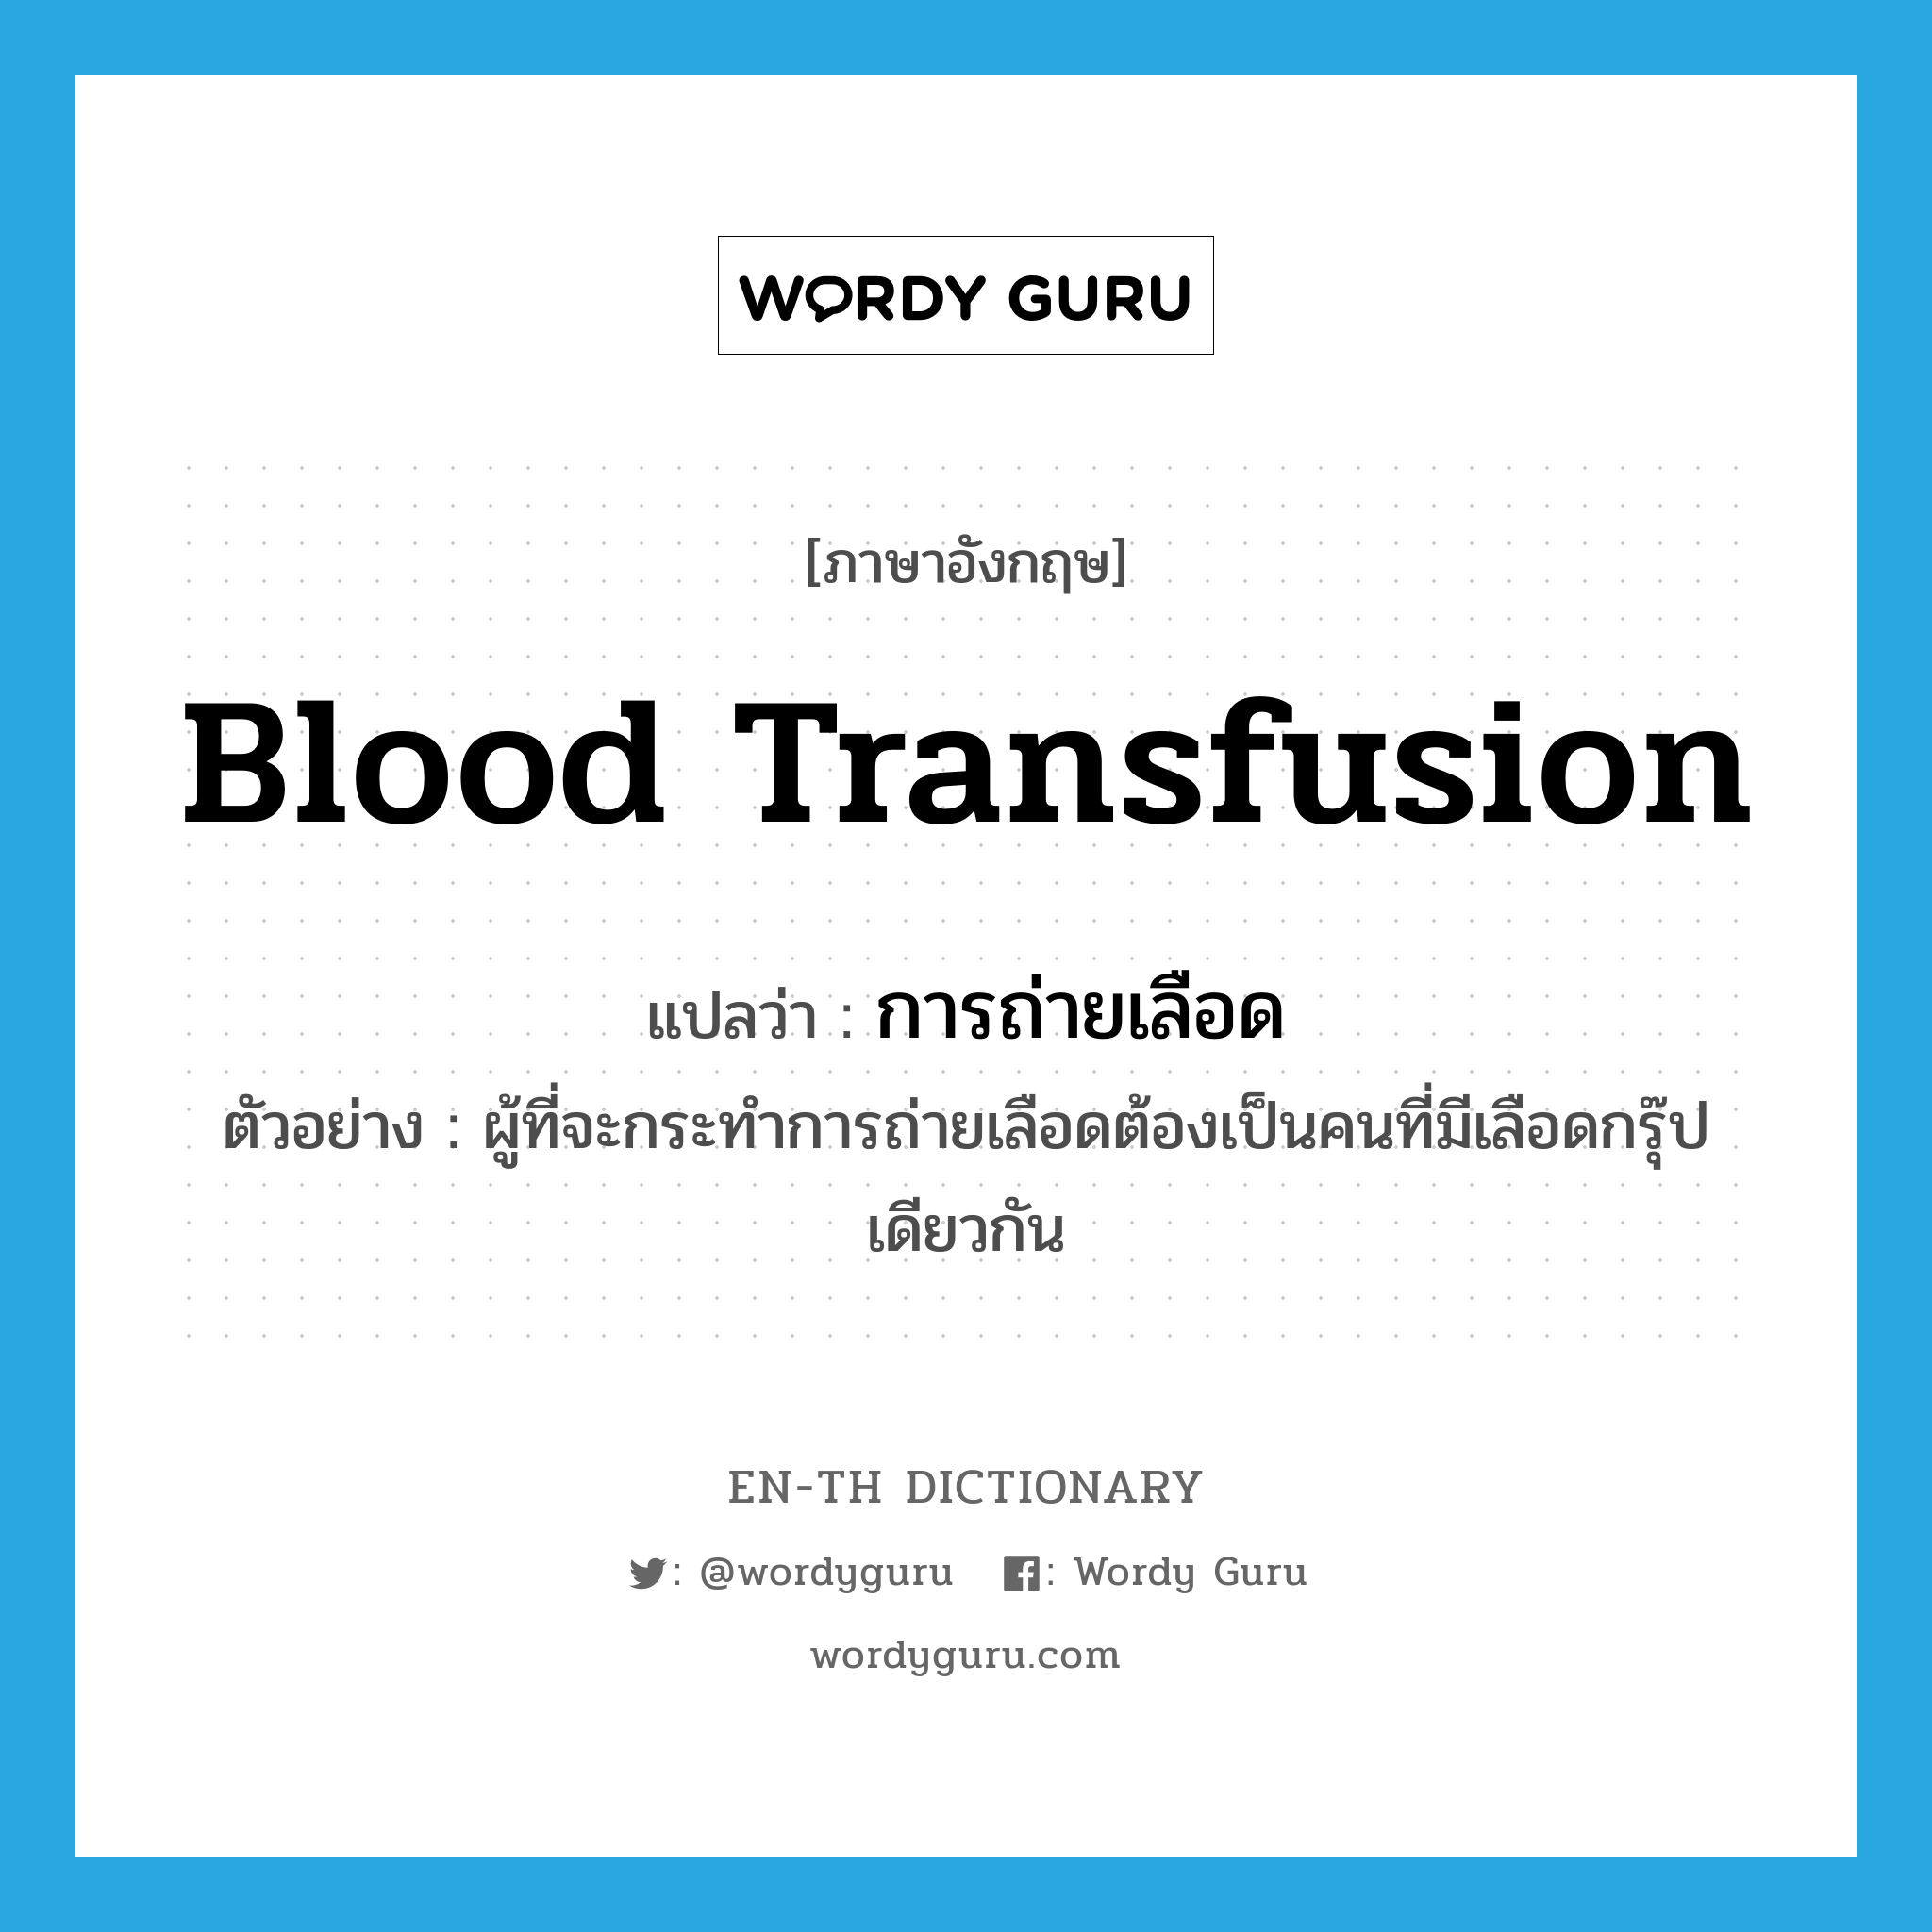 blood transfusion แปลว่า?, คำศัพท์ภาษาอังกฤษ blood transfusion แปลว่า การถ่ายเลือด ประเภท N ตัวอย่าง ผู้ที่จะกระทำการถ่ายเลือดต้องเป็นคนที่มีเลือดกรุ๊ปเดียวกัน หมวด N